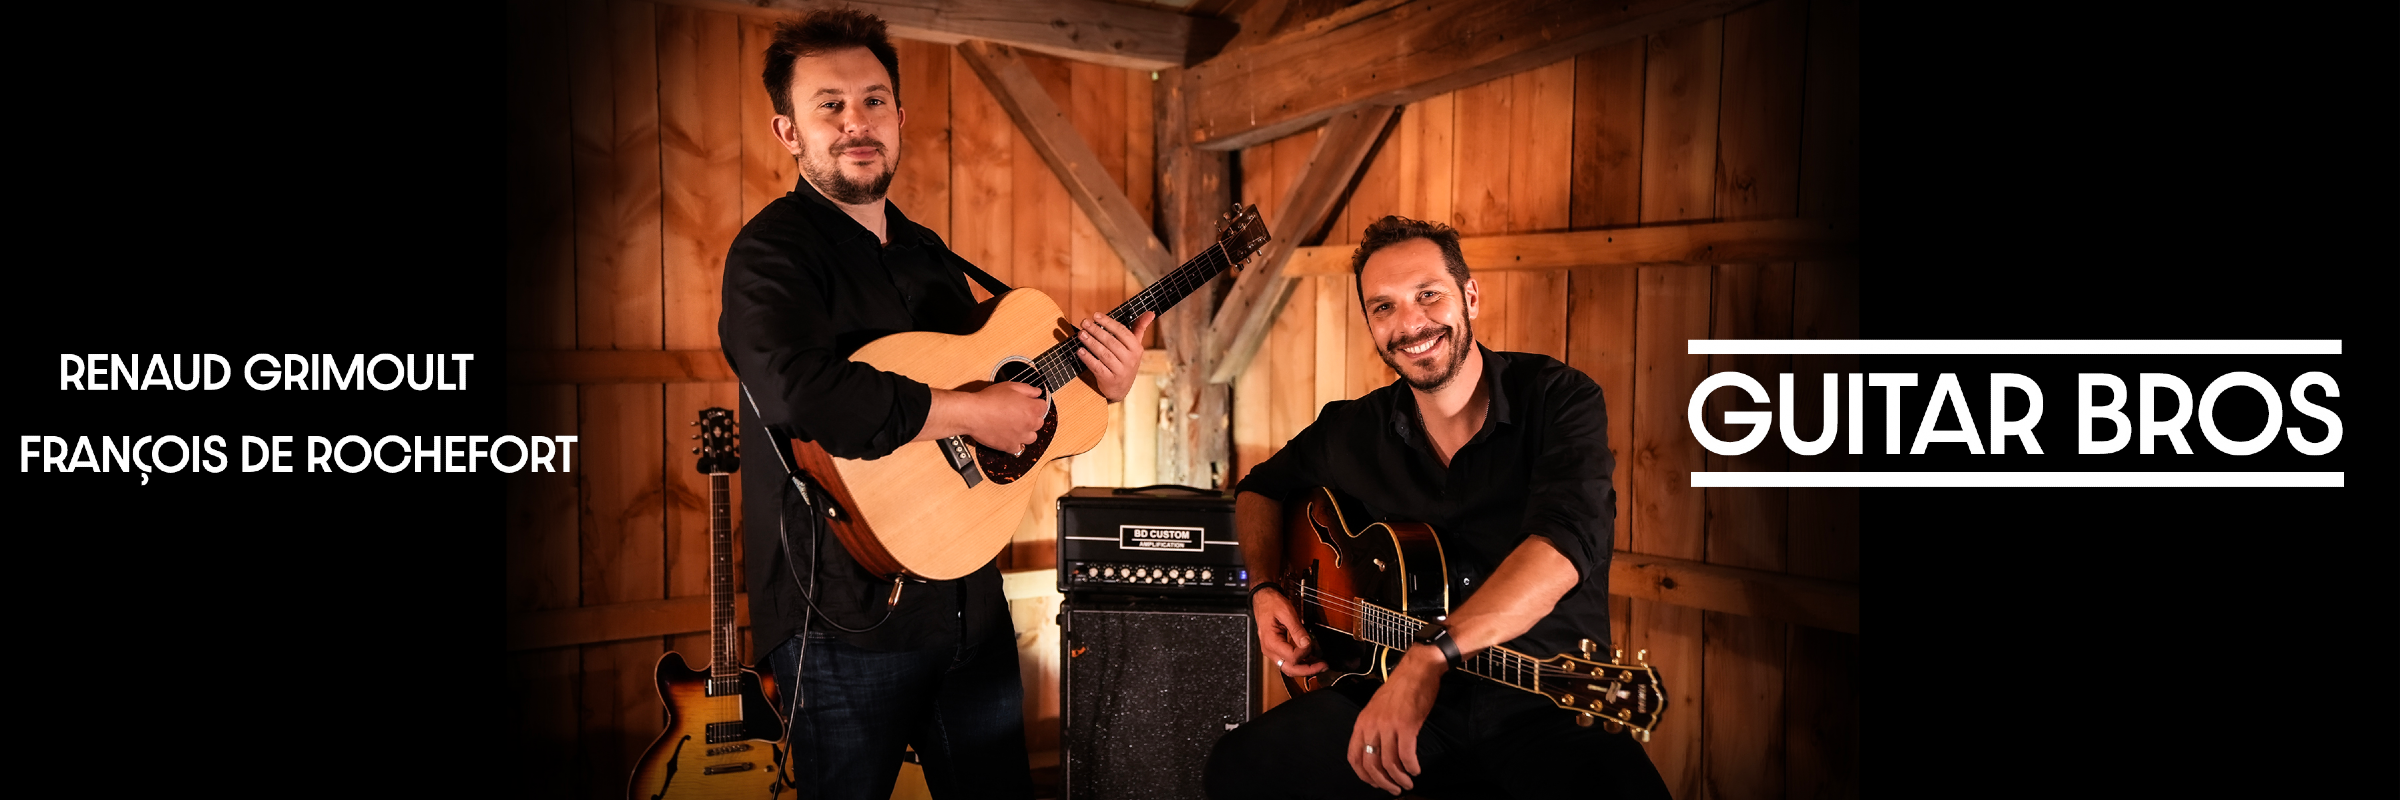 Guitar Bros, musicien Pop en représentation à Gironde - photo de couverture